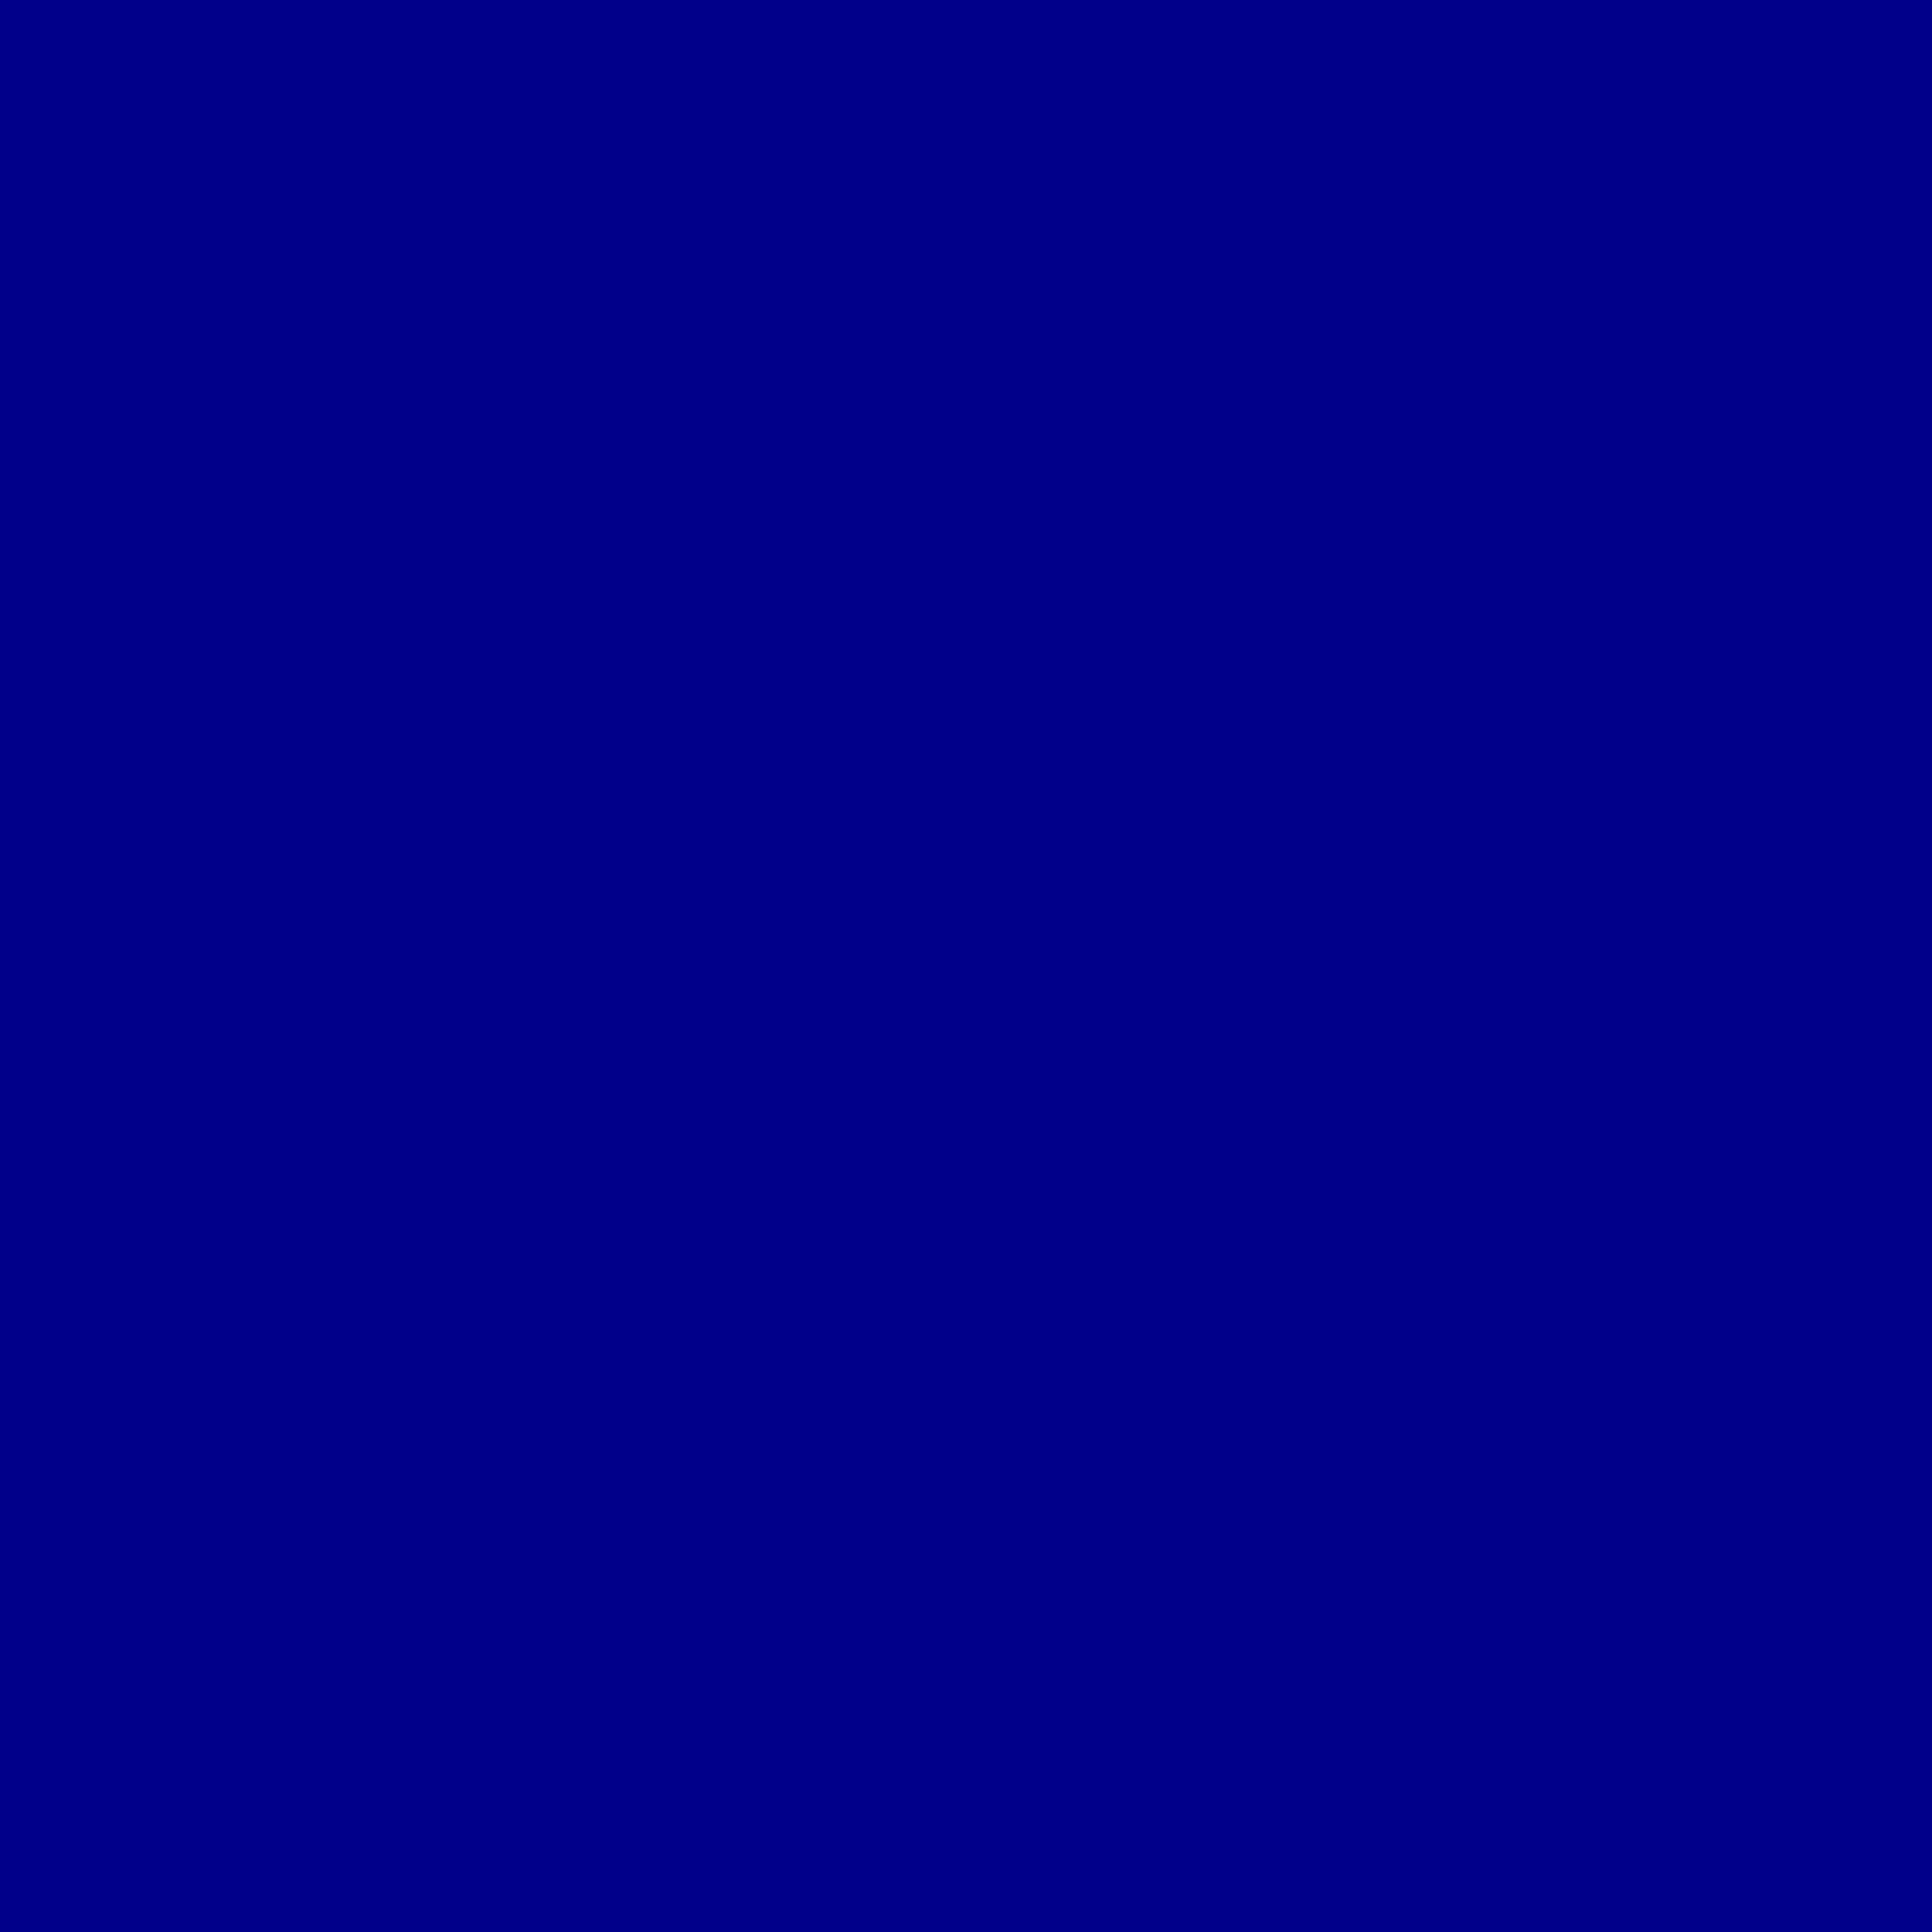 ダークブルーの壁紙,コバルトブルー,青い,バイオレット,エレクトリックブルー,黒